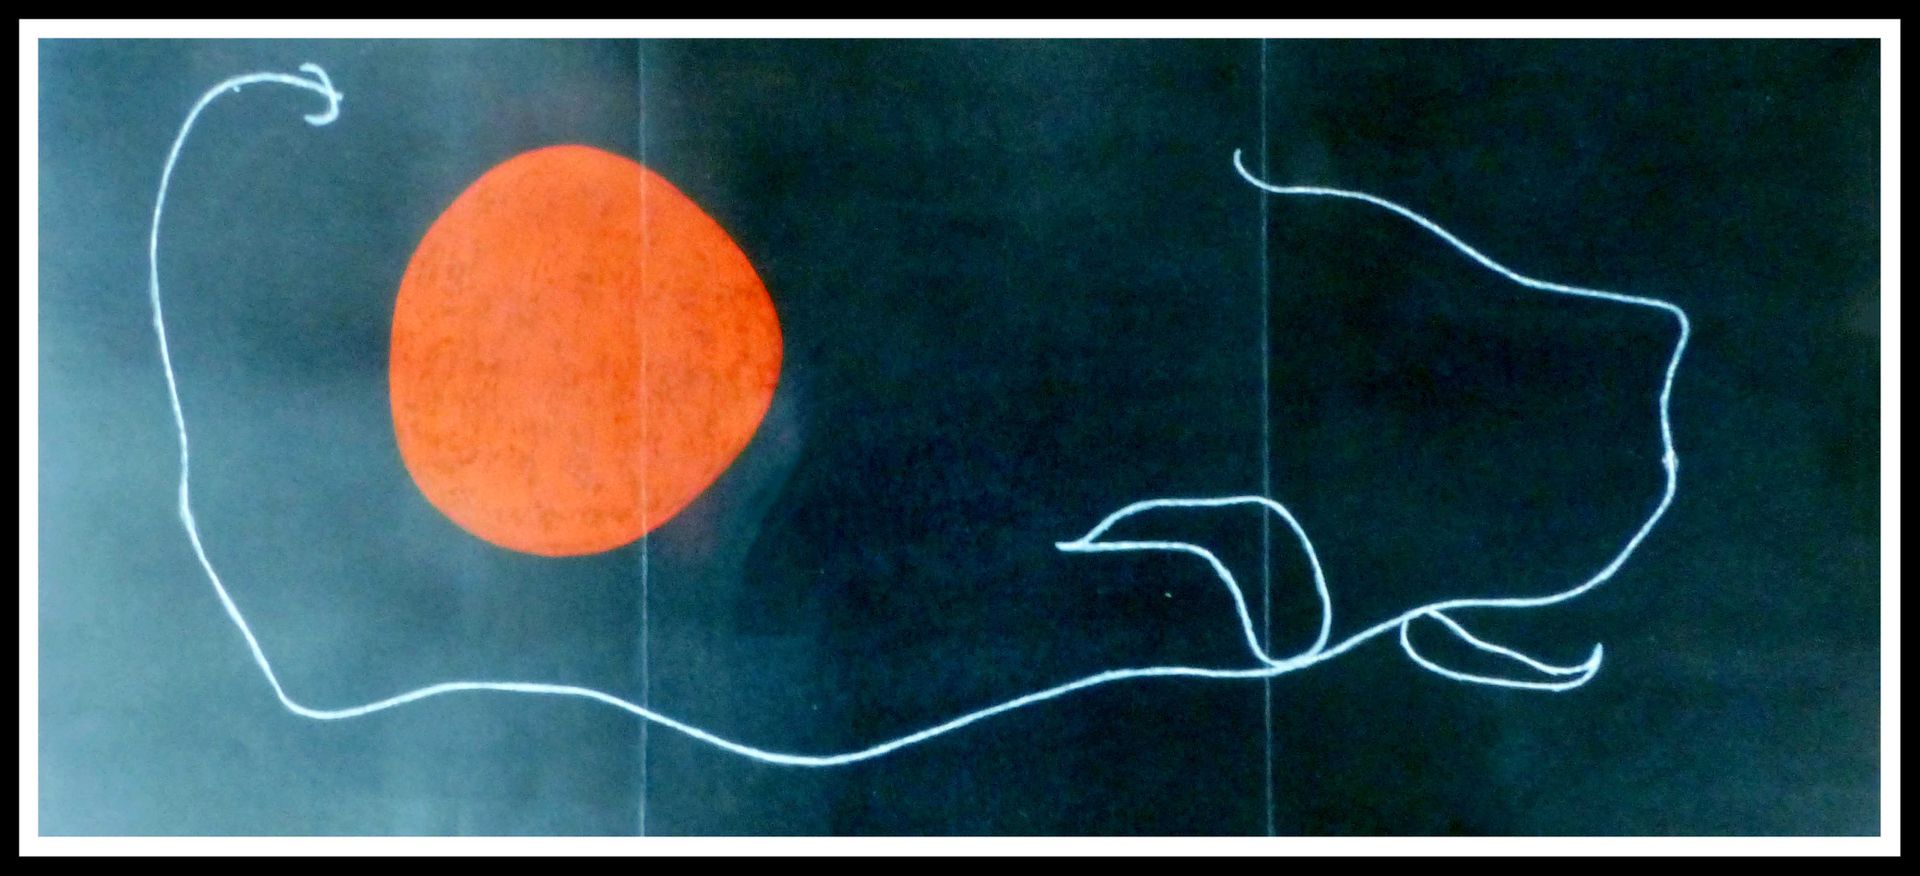 Joan Miro Joan MIRO (1893 - 1983)

Composición mancha roja sobre fondo negro

19&hellip;